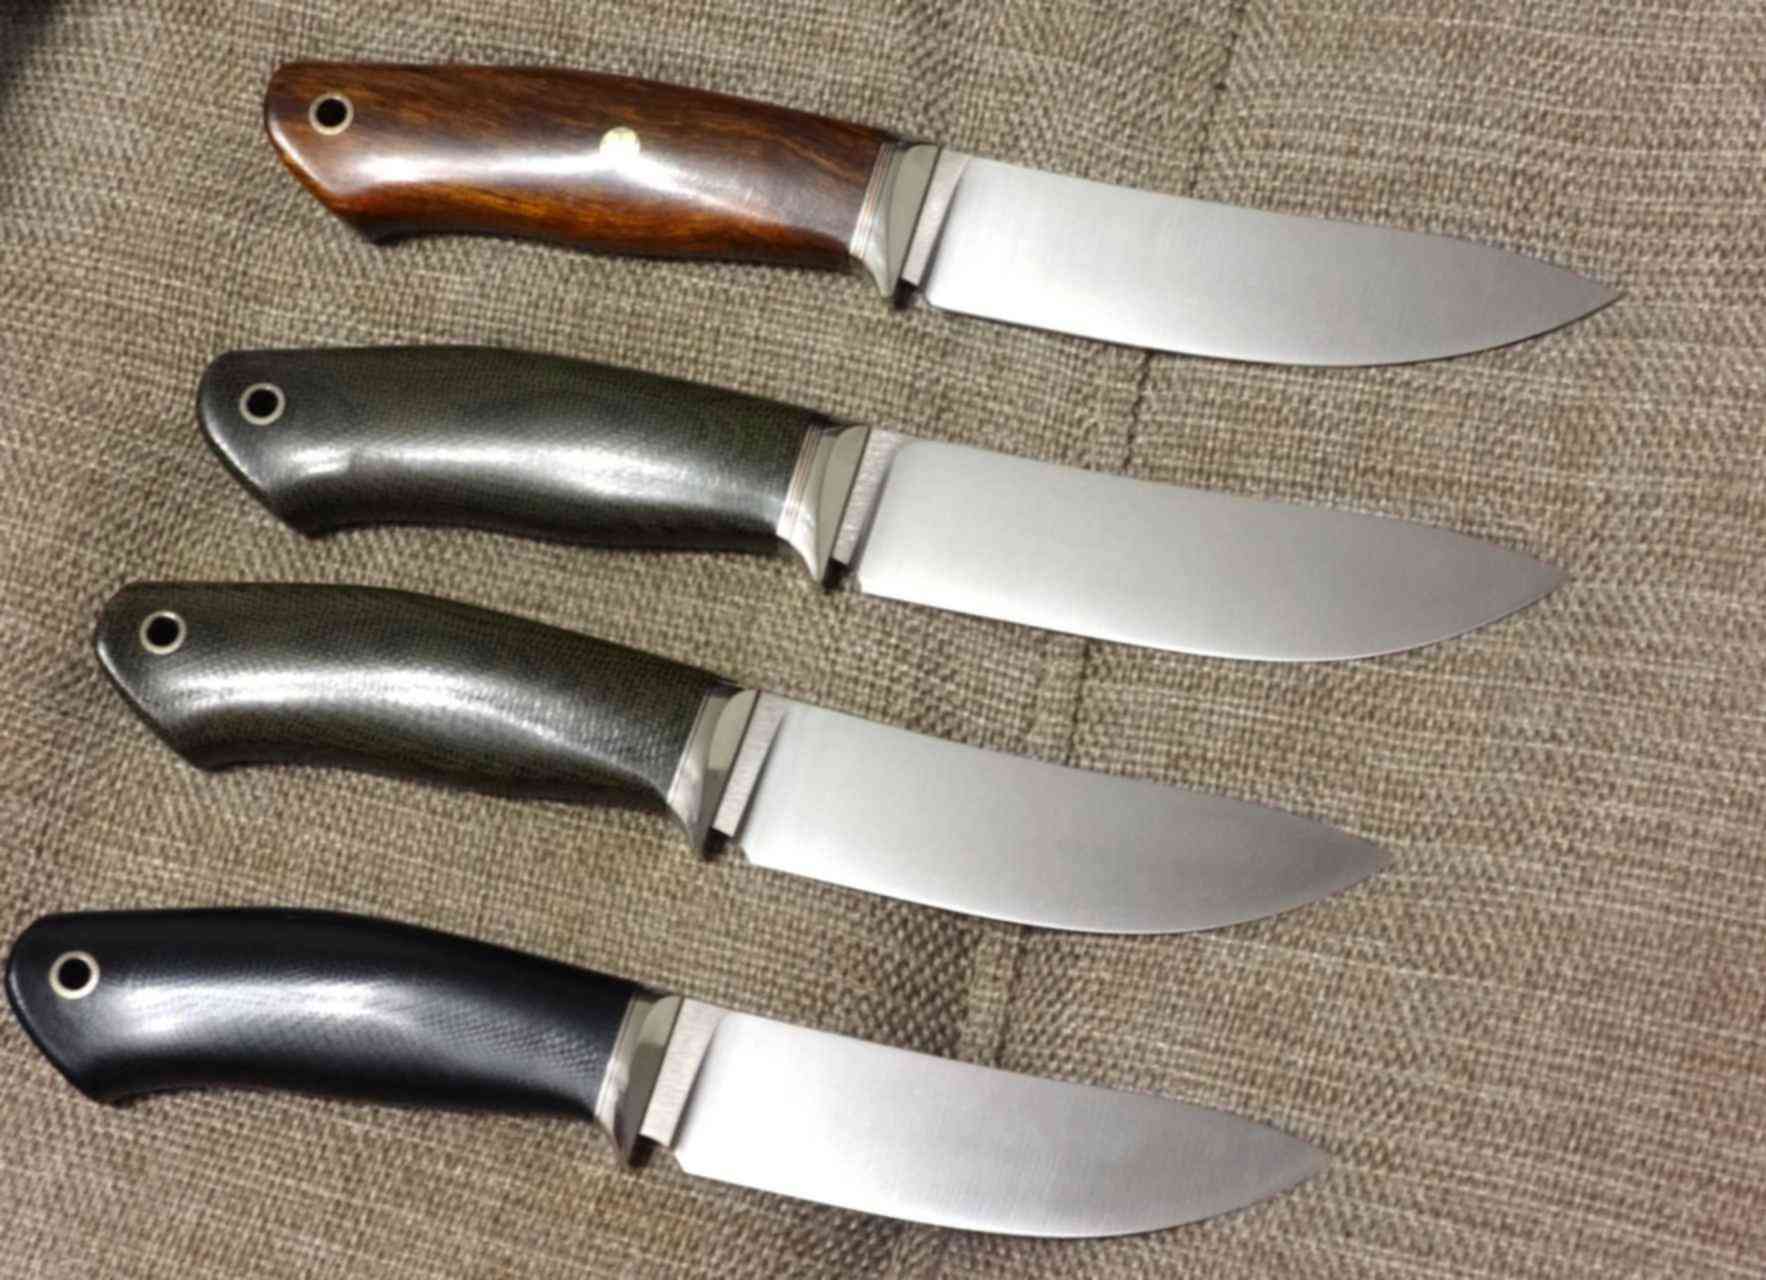 4 ножевых. Рукоятка ножа g10 Энцо. Ножи СРМ 121 Rex. G10 рукоять ножа. Микарта g10.